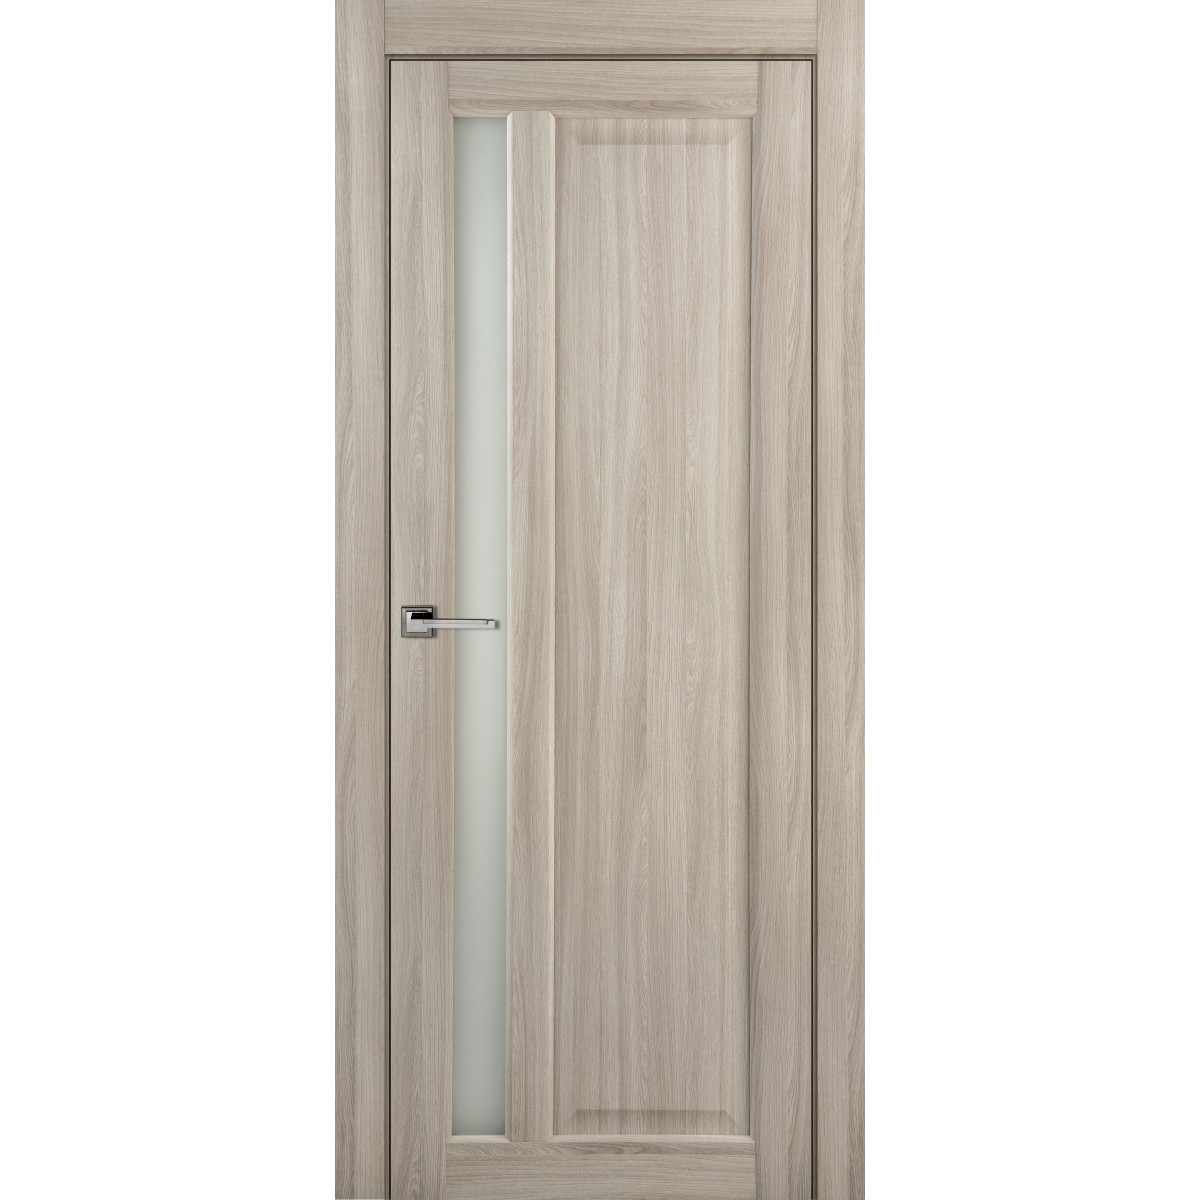 Дверь межкомнатная остеклённая Artens Мария 60x200 см, ПВХ, цвет шимо, с замком в комплекте